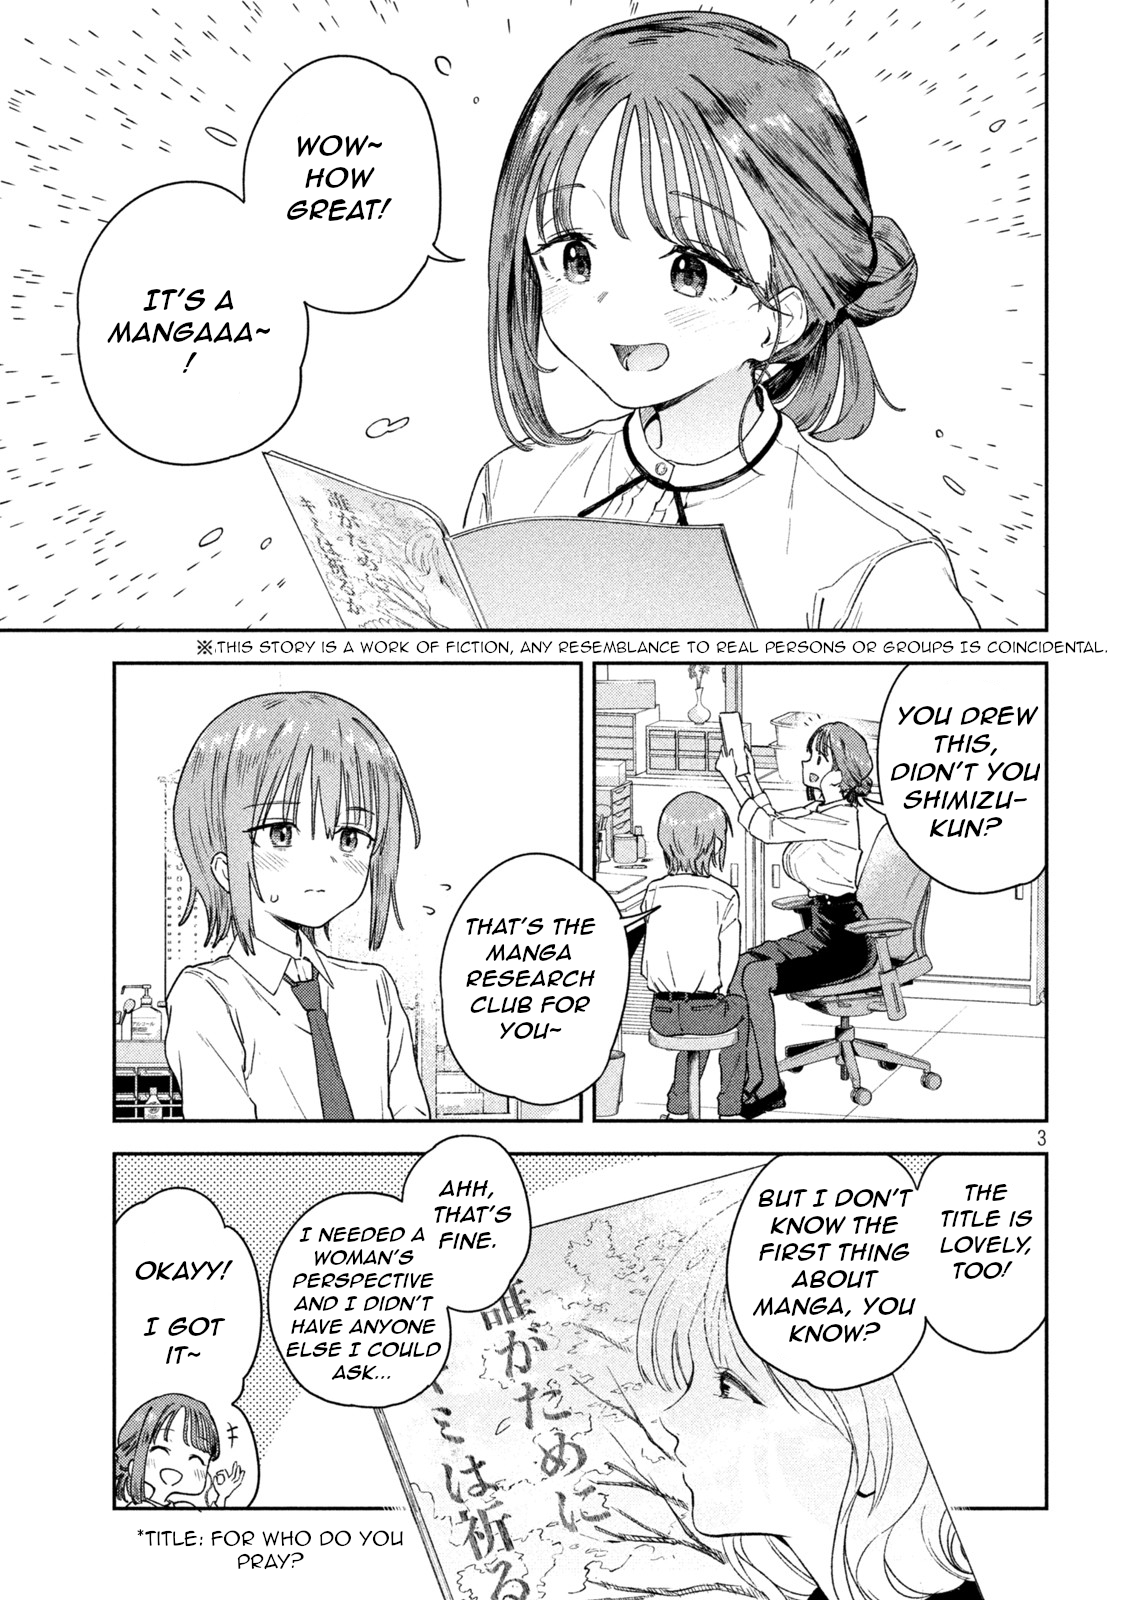 Miyo-Chan Sensei Said So - Page 3